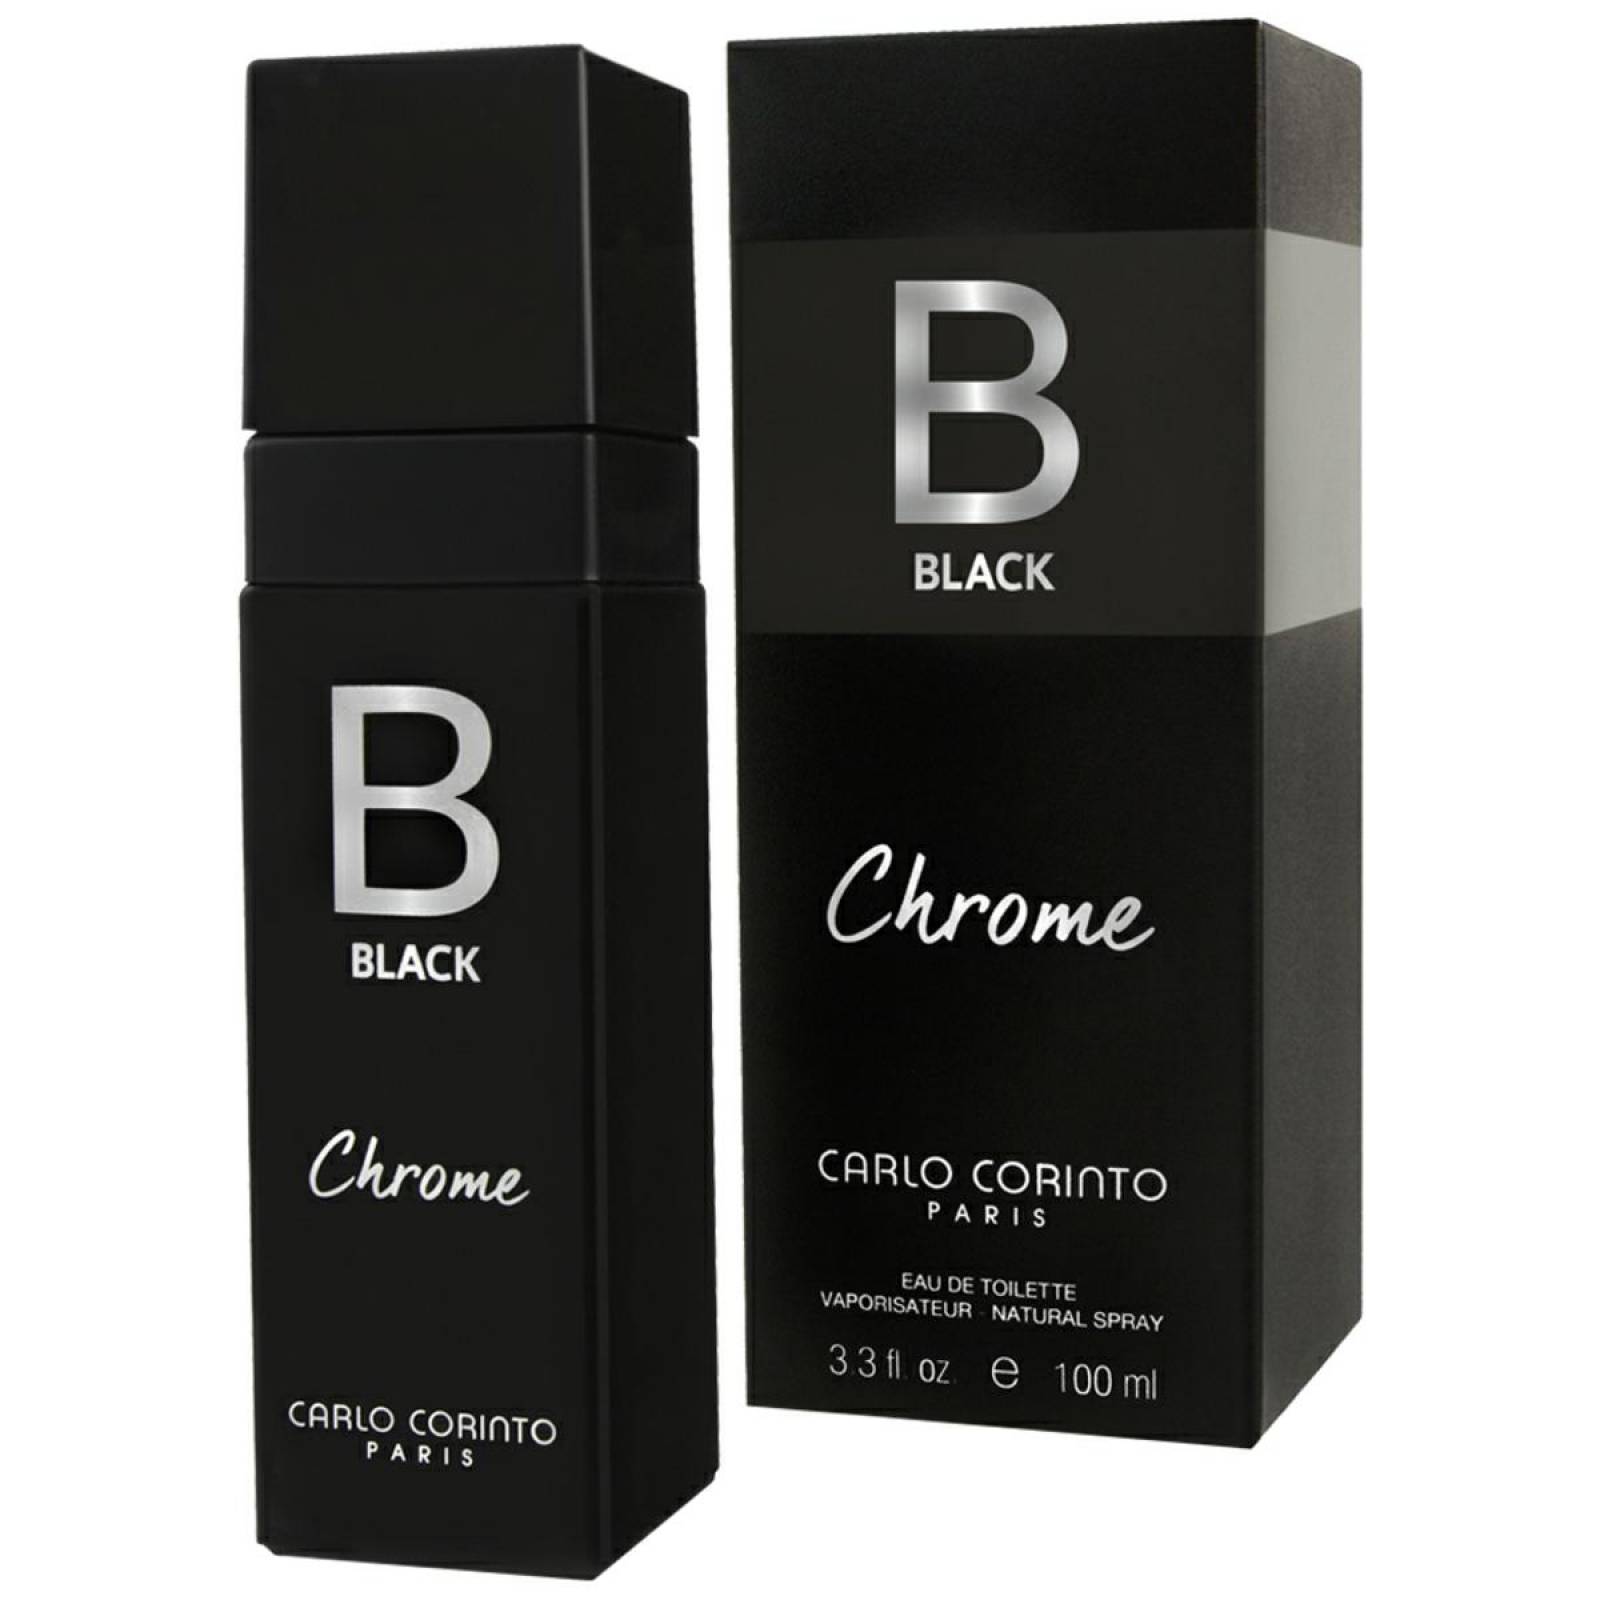 Black Chrome de Carlo Corinto Caballero de 100 ml